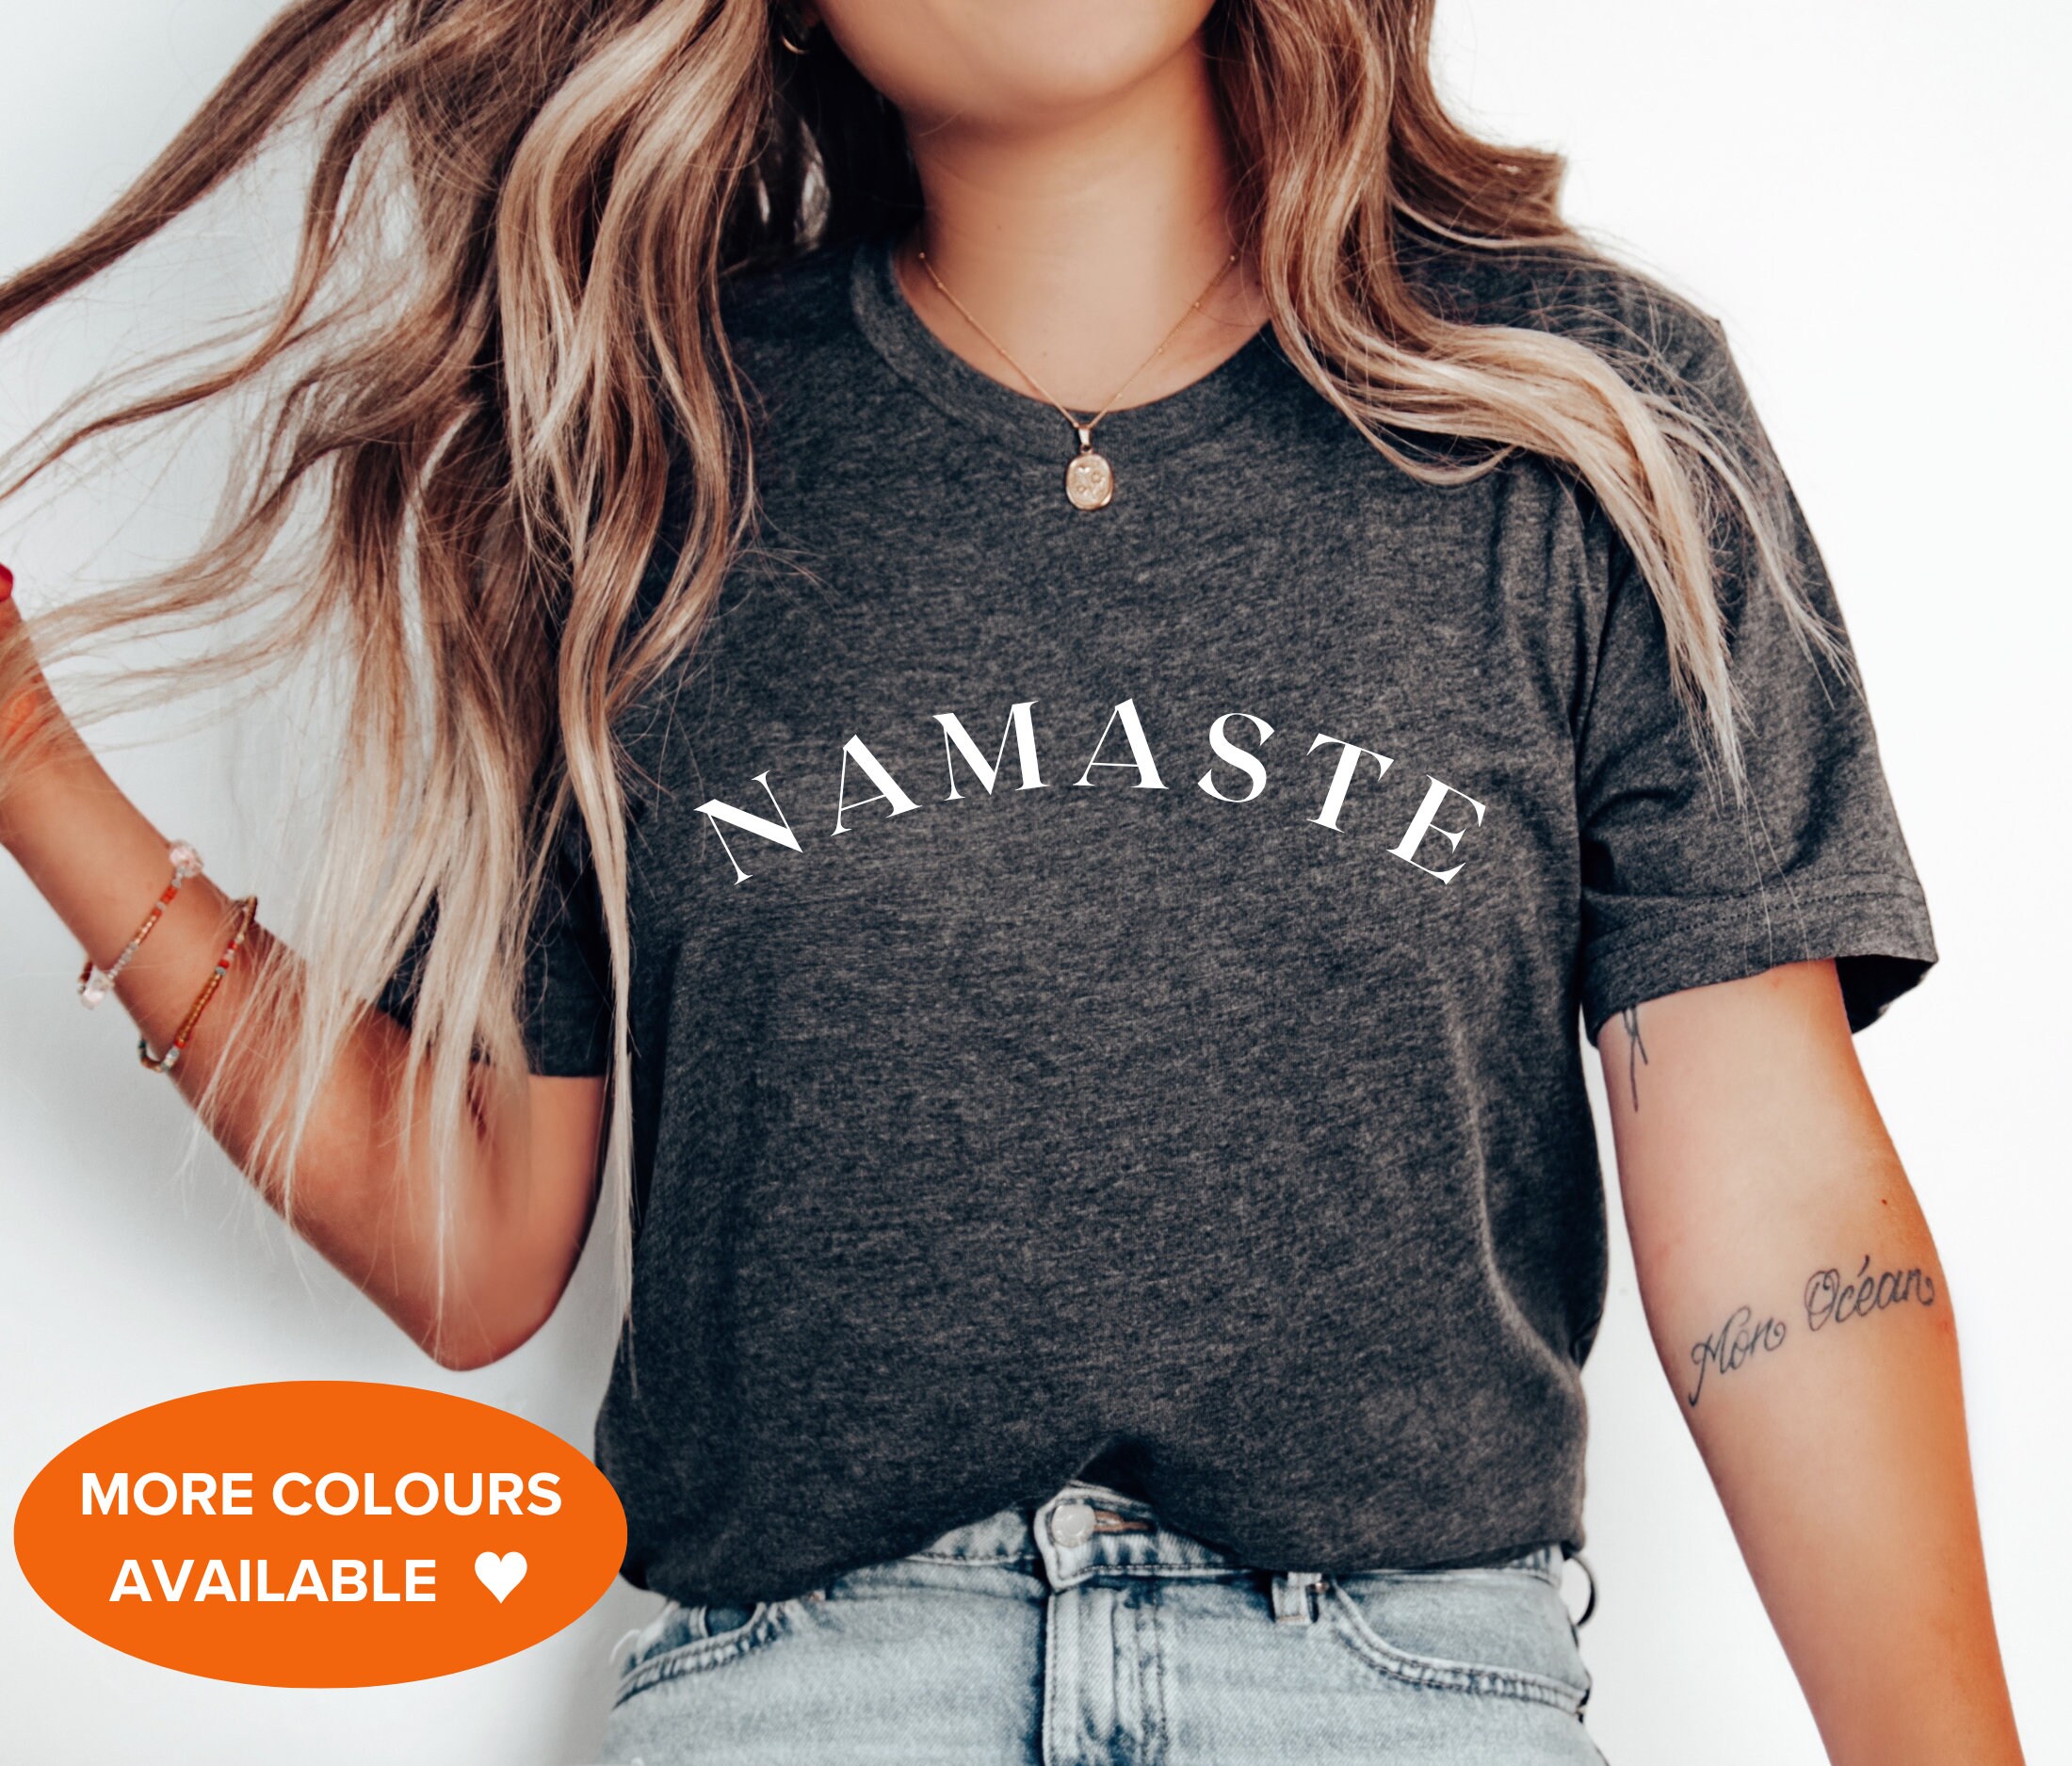 Funny Yoga for Women Men Namaste Om Meditation Light T-Shirt by Nikita Goel  - Pixels